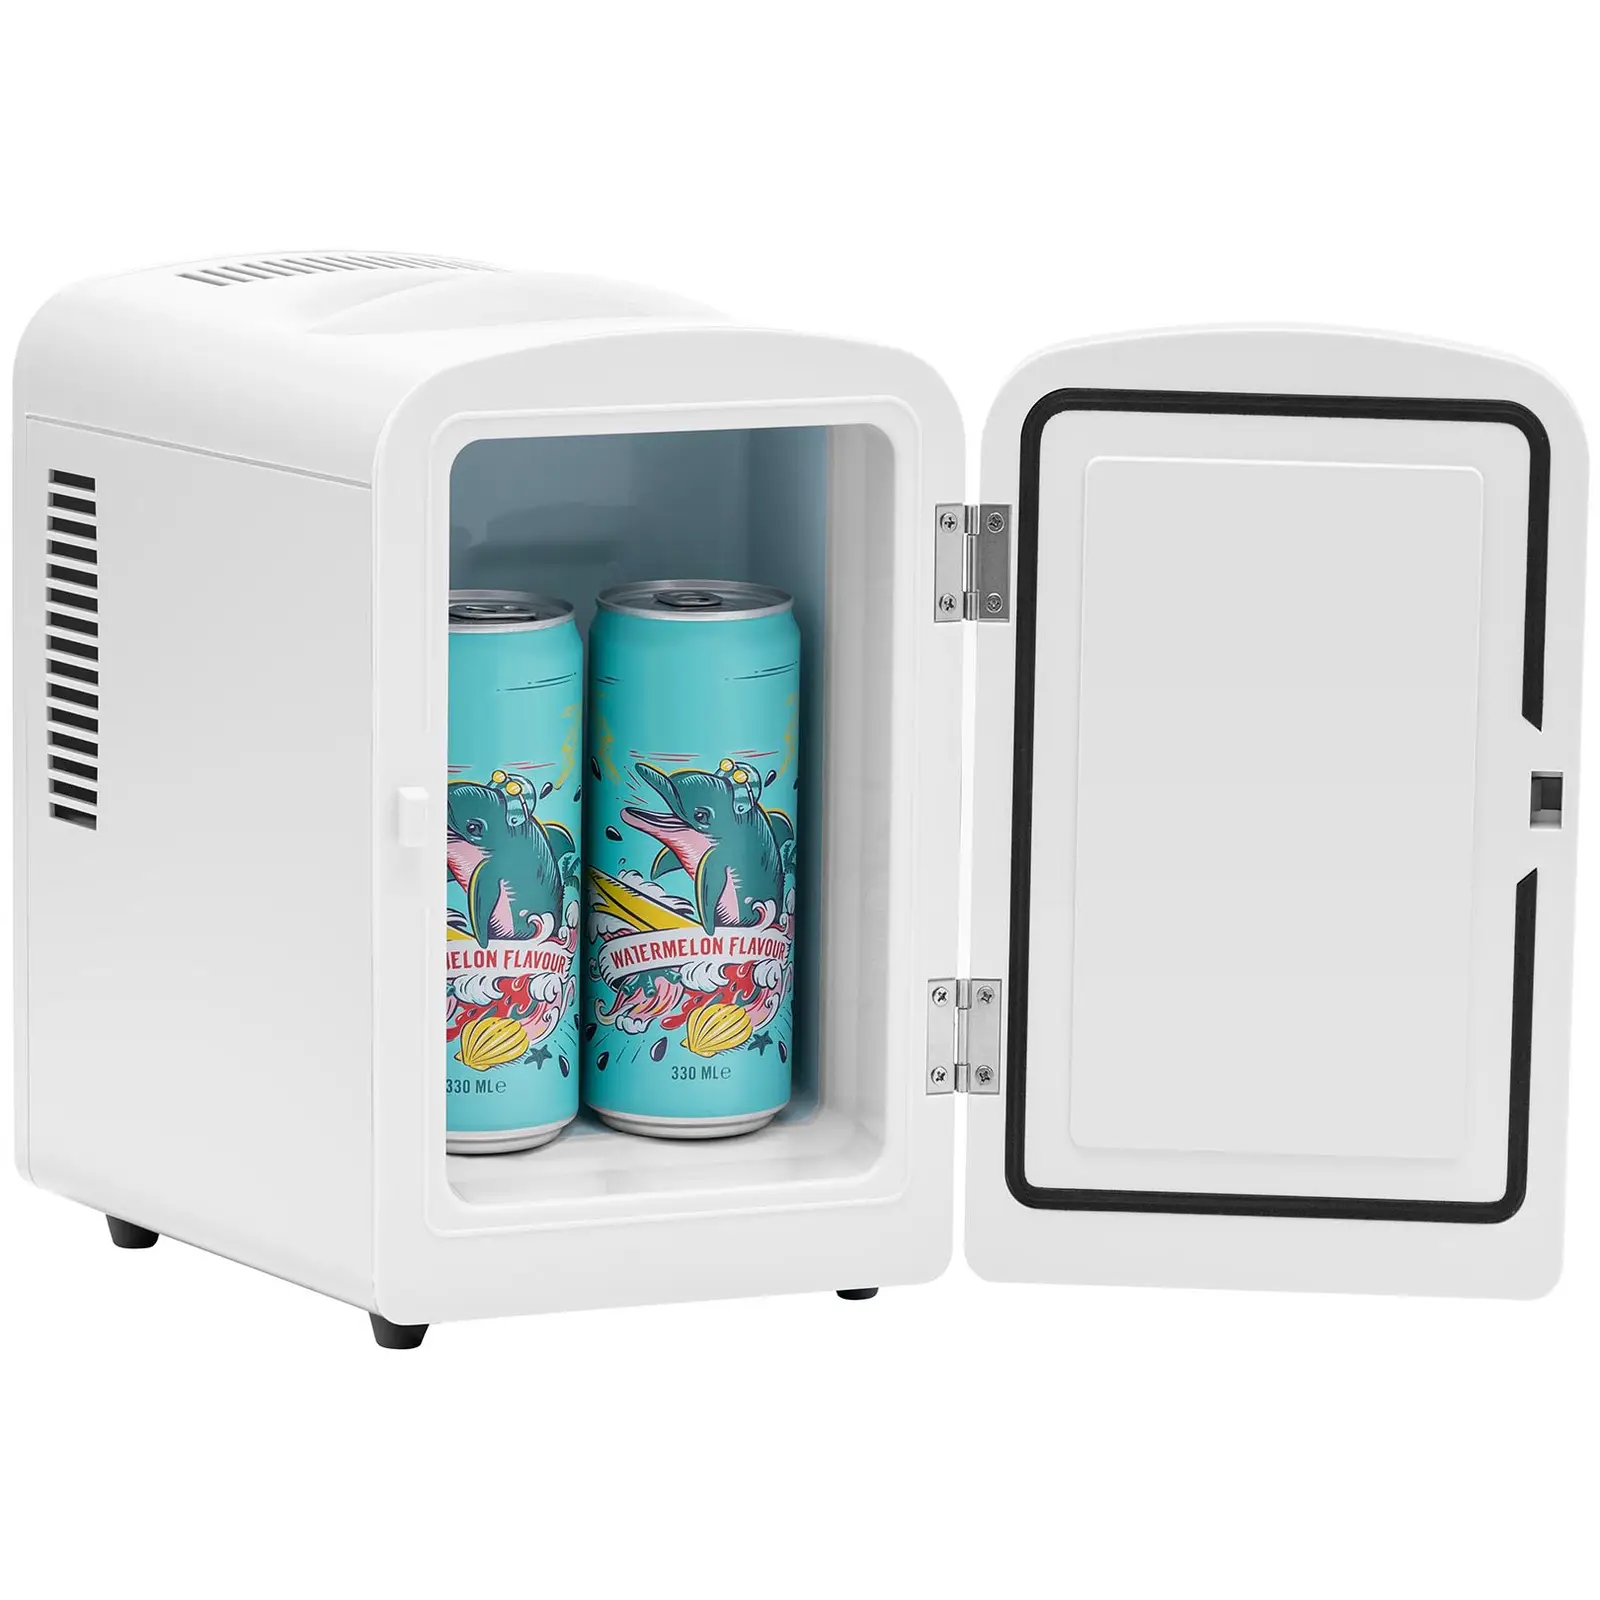 Mini frigo 12 V / 230 V - 2 in 1 con funzione di mantenimento del calore - 4 L - Bianco